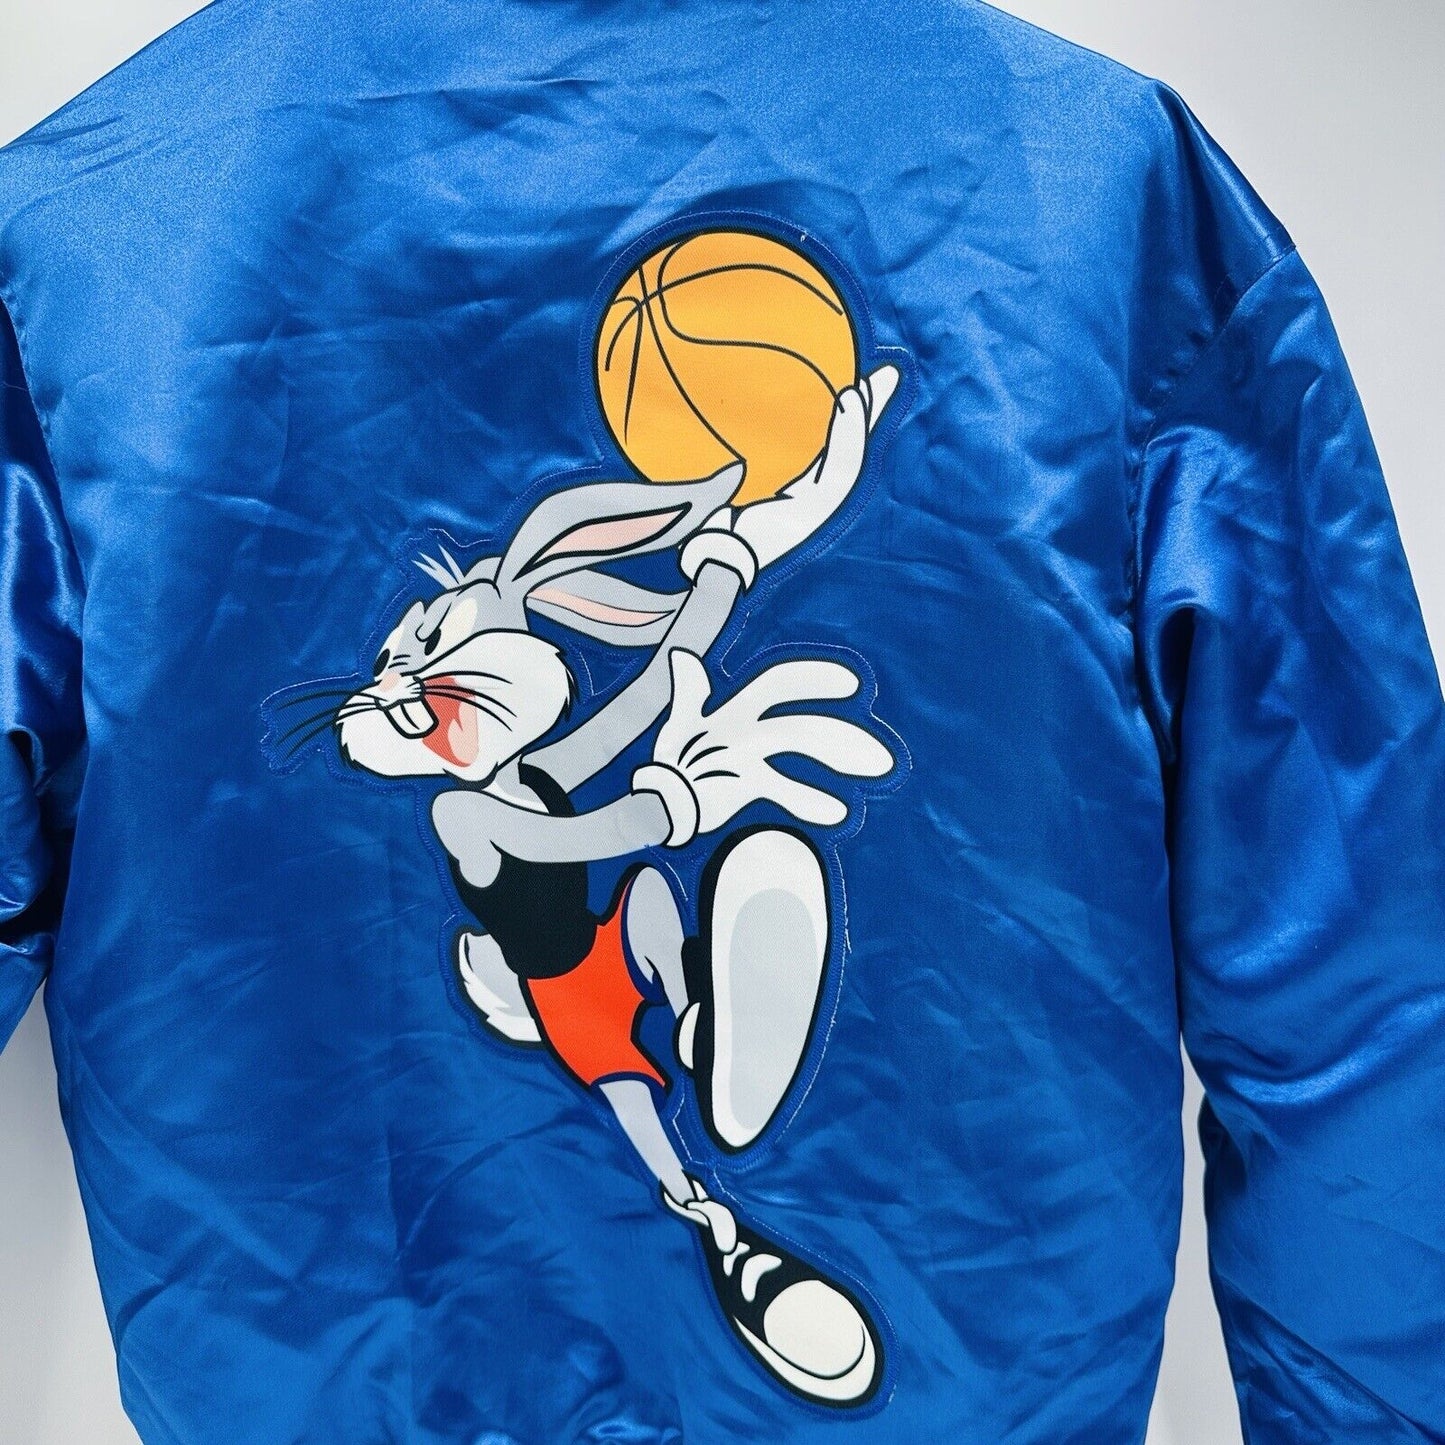 Headgear Classics Bomber Jacket Size Small Tunesquad Bugs Bunny Satin Blue Logo